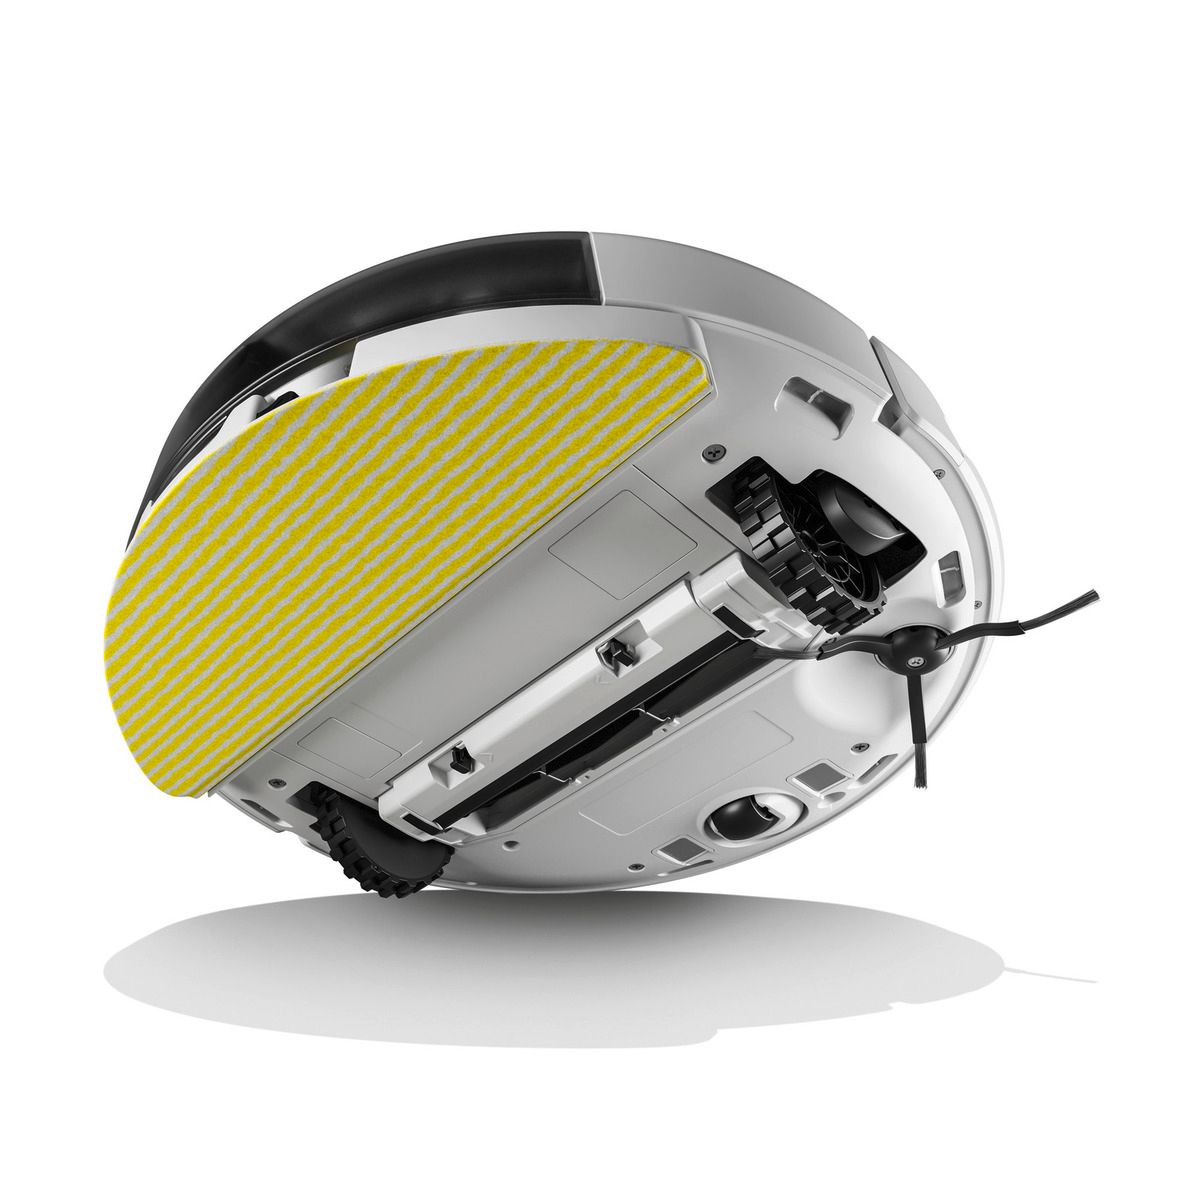 Aspirator robot cu funcție de mop RCV 5, spala in mod complet autonom, cu ajutorul inteligentei artificiale